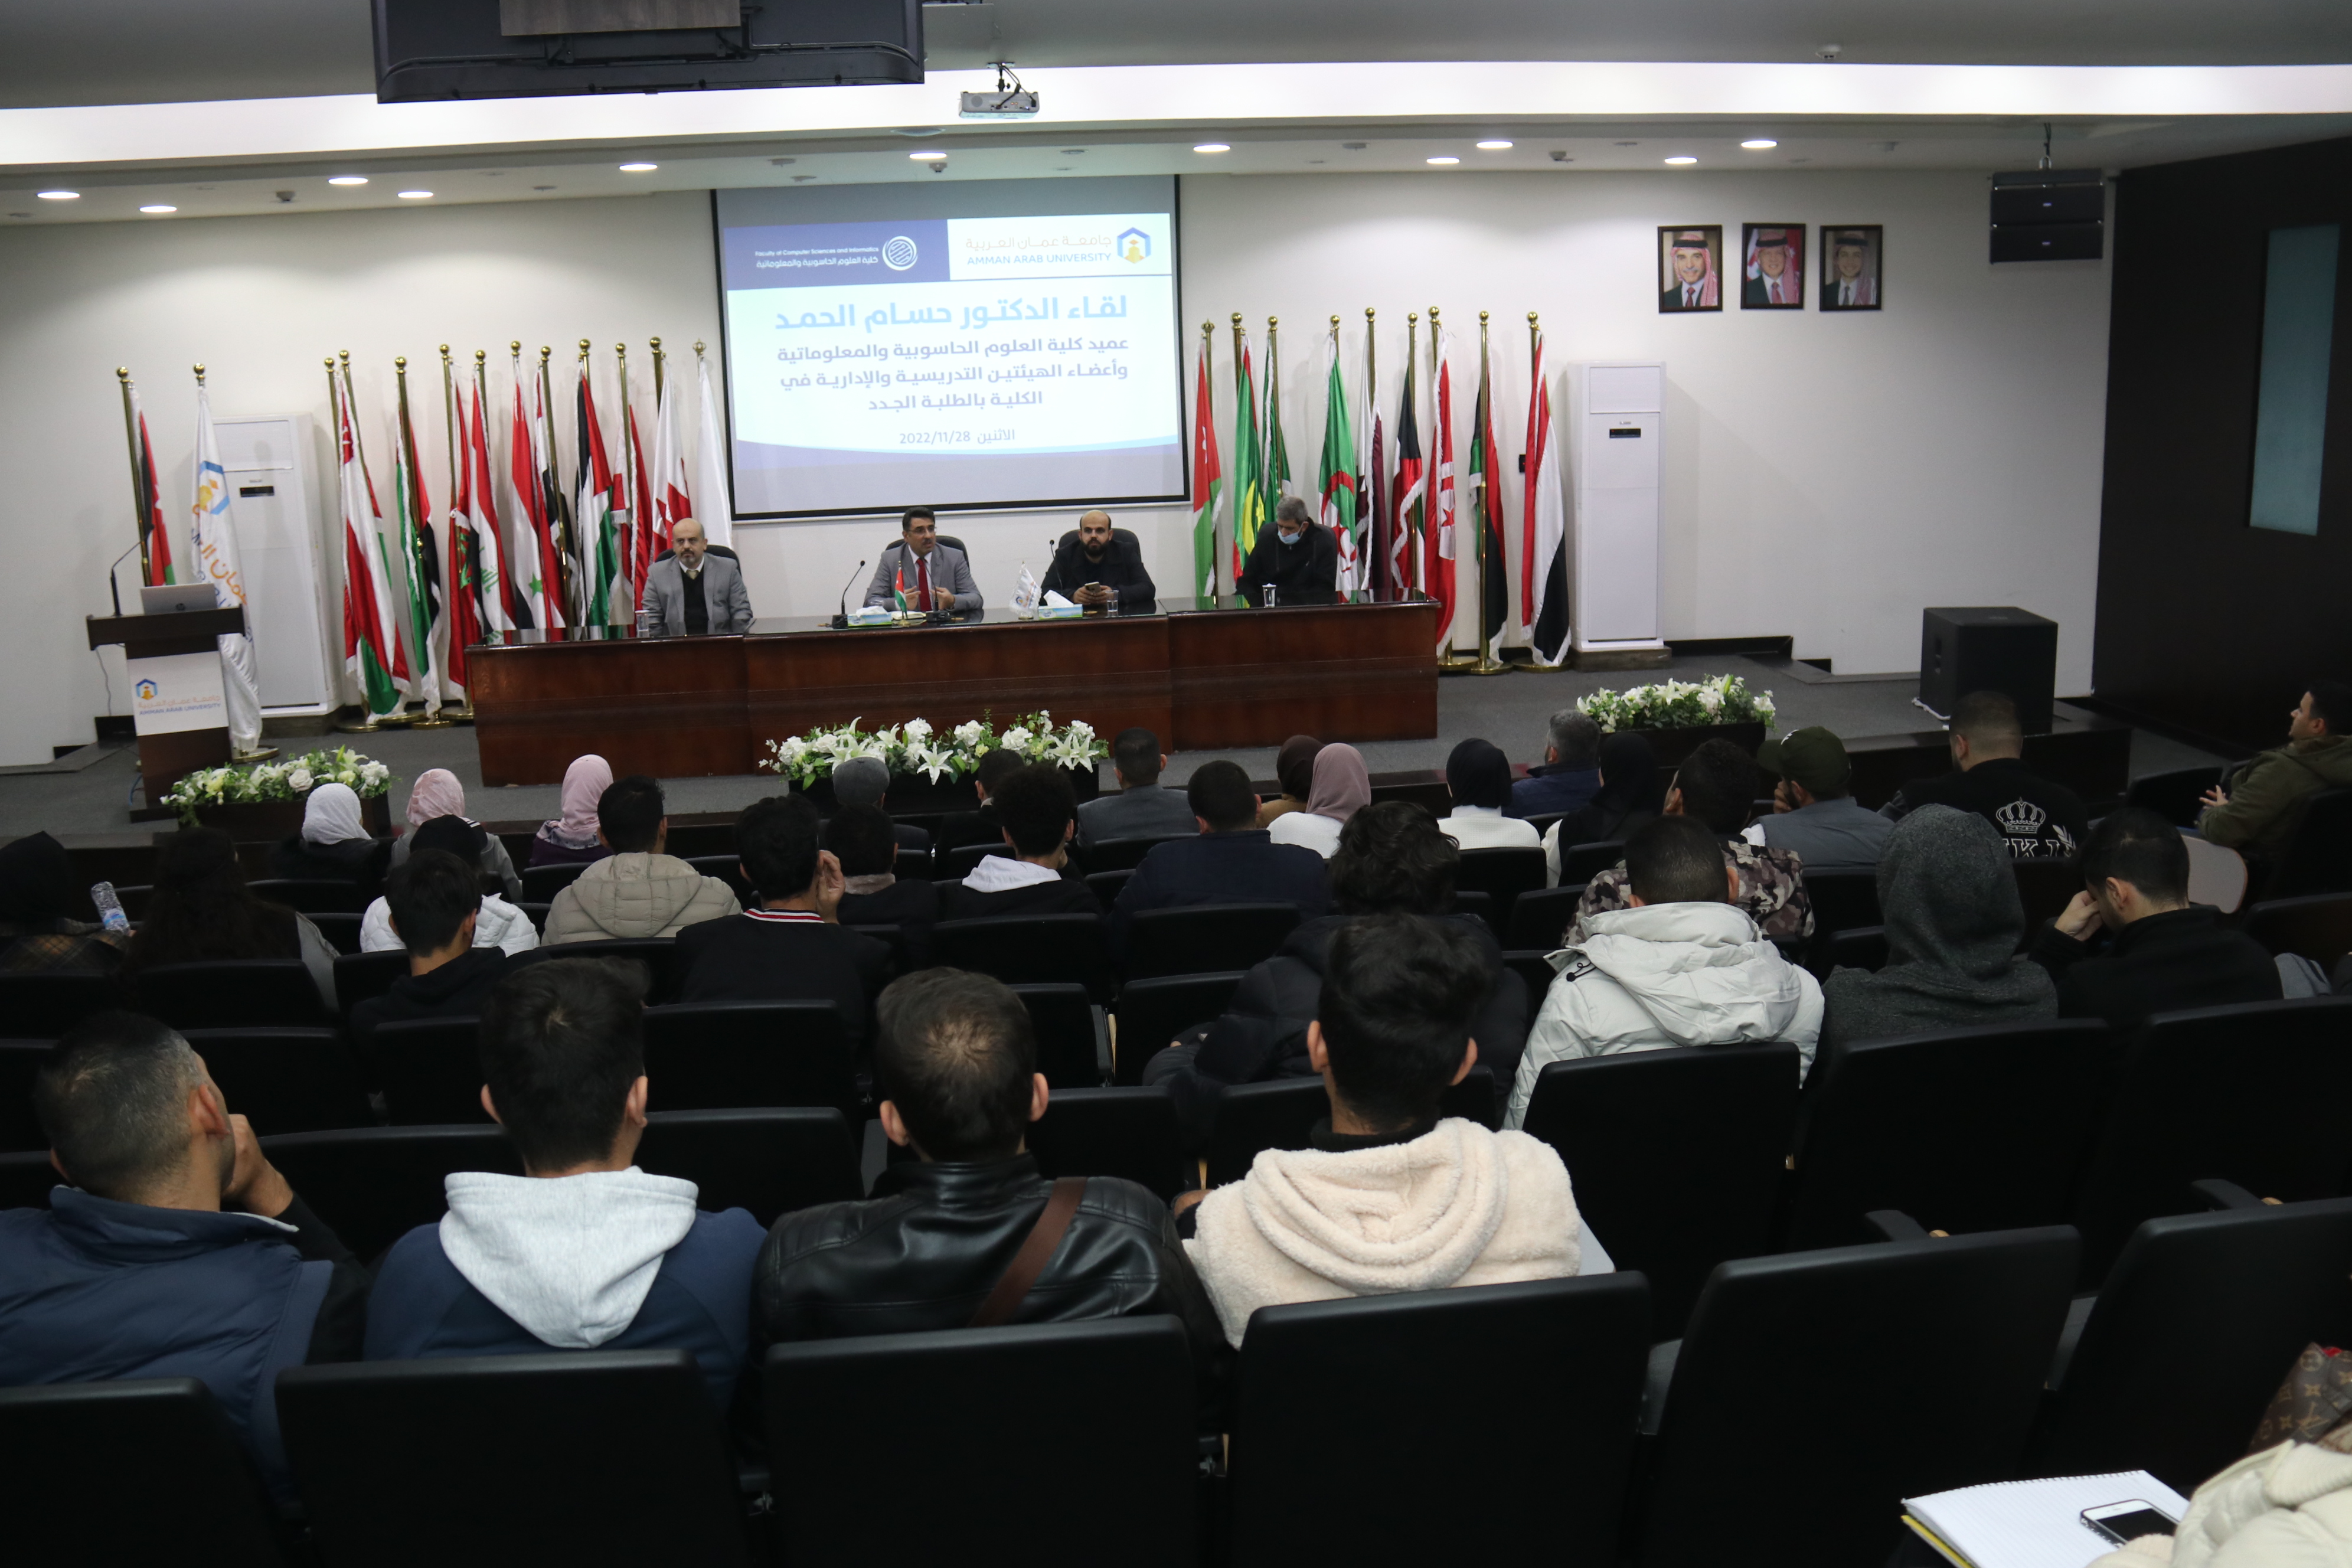 العلوم الحاسوبية والمعلوماتية "عمان العربية" تدعم مشاركات طلبتها محلياً وإقليمياً ودولياً3